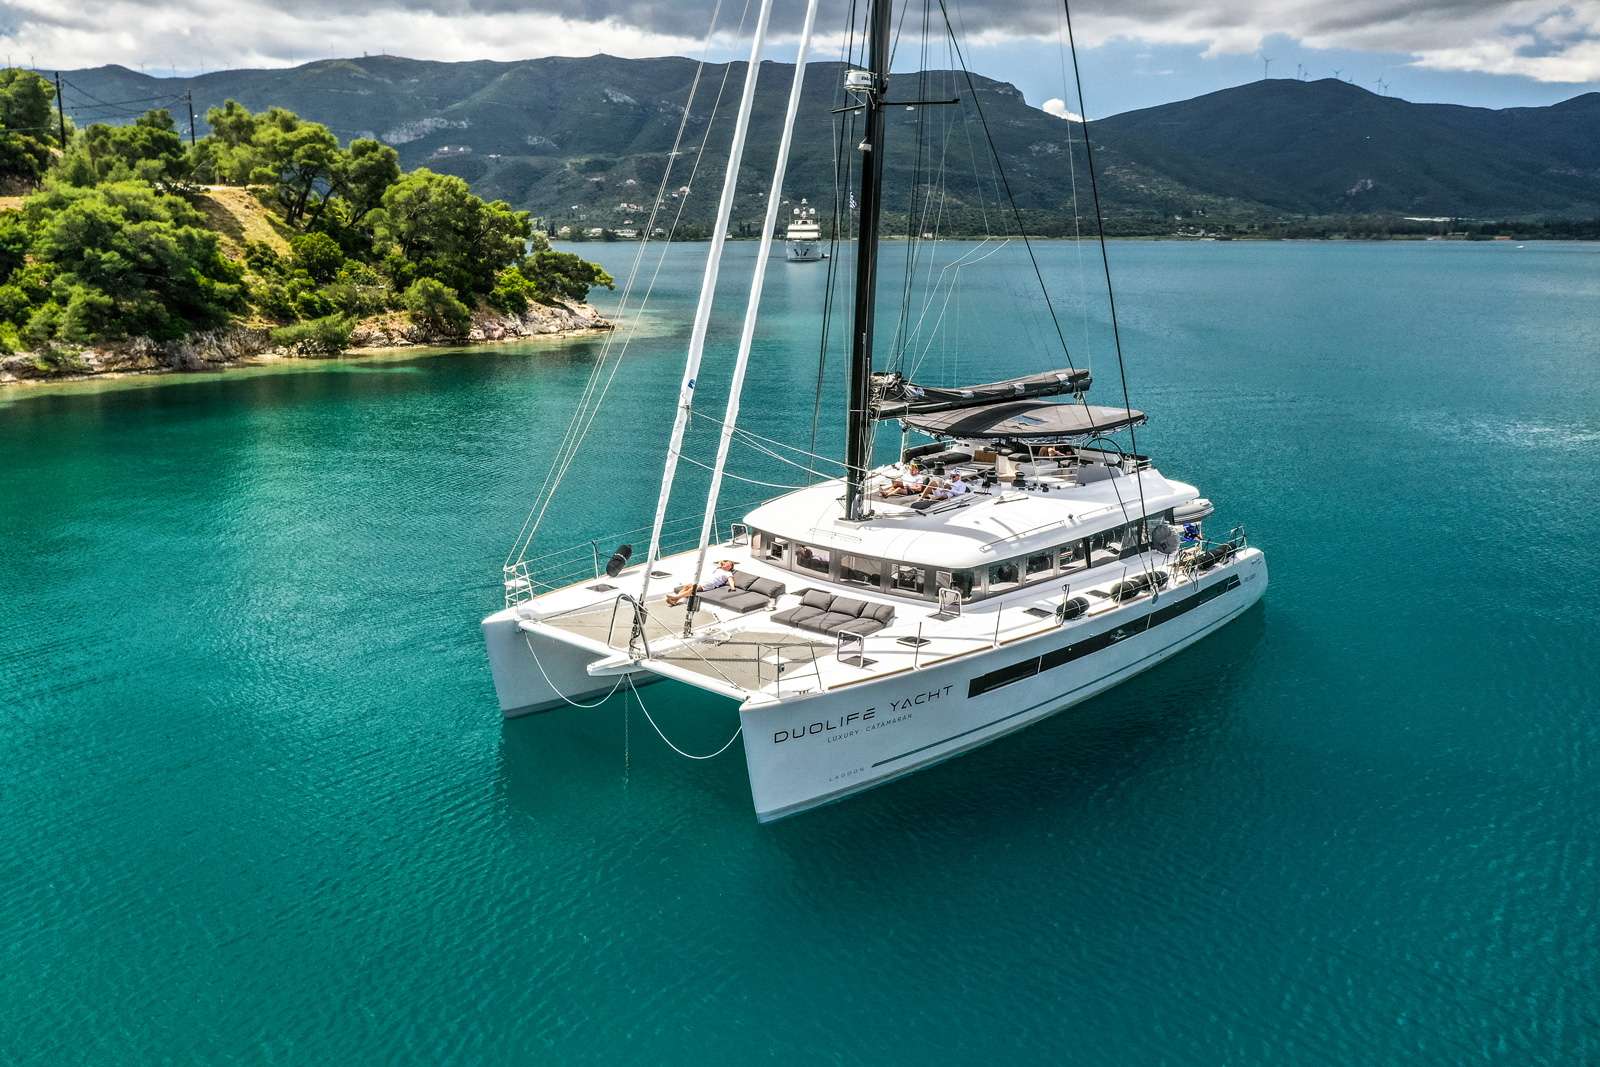 DUOLIFE - Yacht Charter Podstrana & Boat hire in Croatia 6